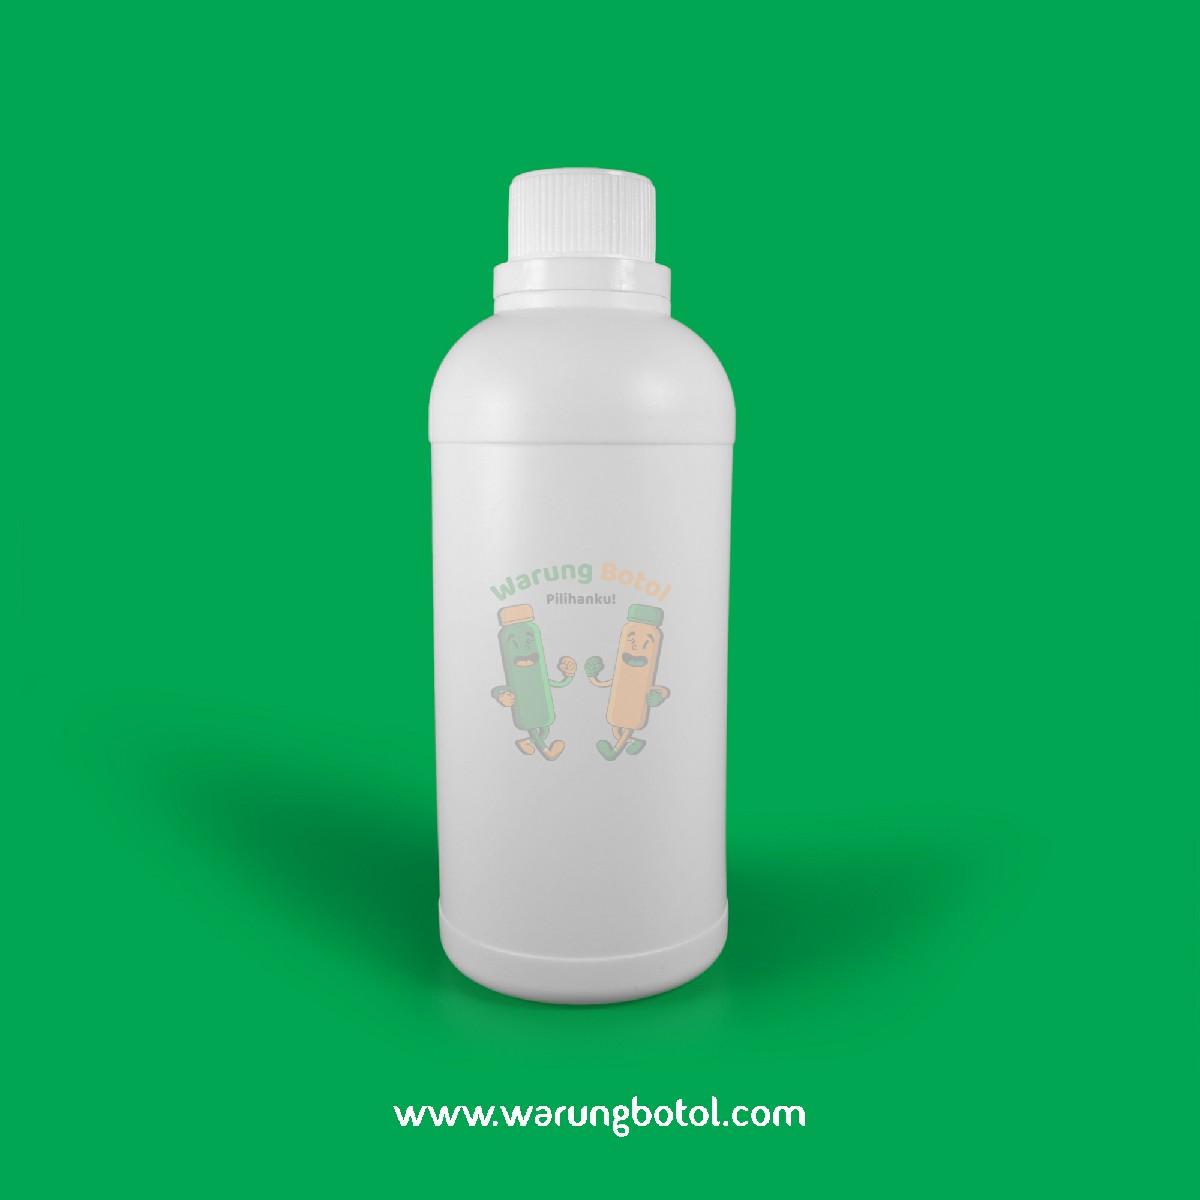 distributor toko jual botol plastik labor untuk bahan kimia 500ml putih murah terdekat bandung jakarta bogor bekasi